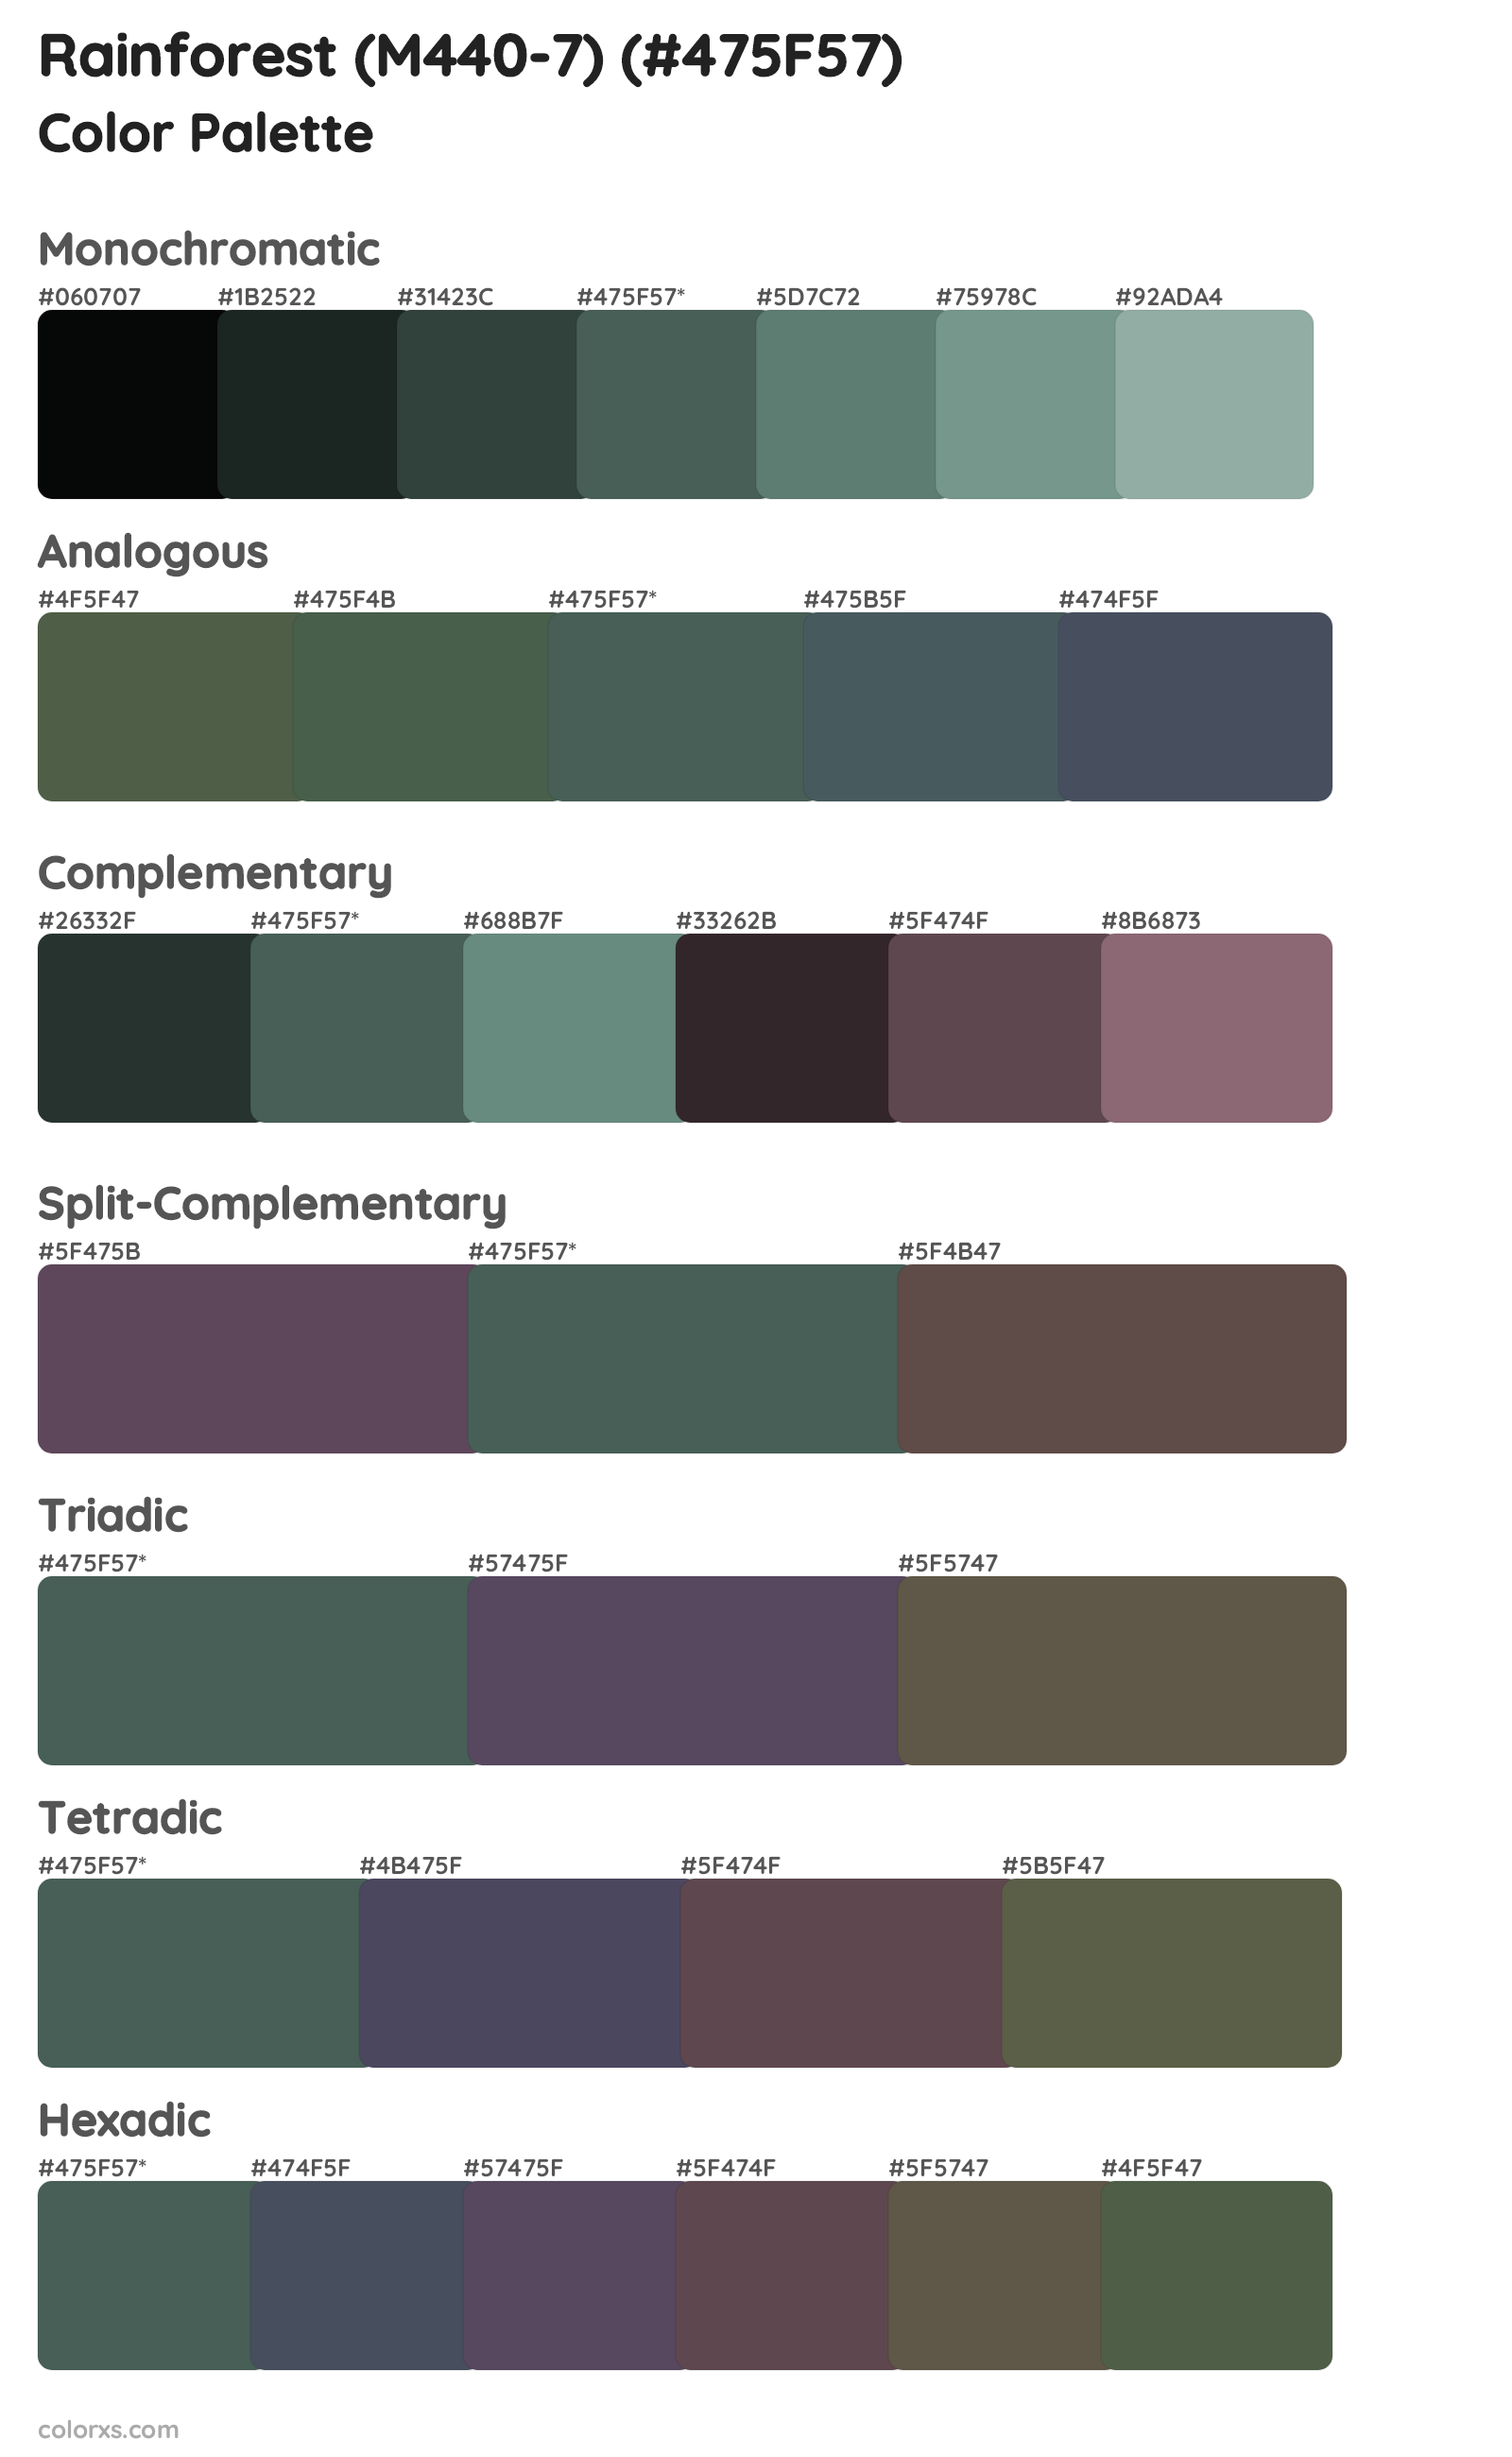 Rainforest (M440-7) Color Scheme Palettes